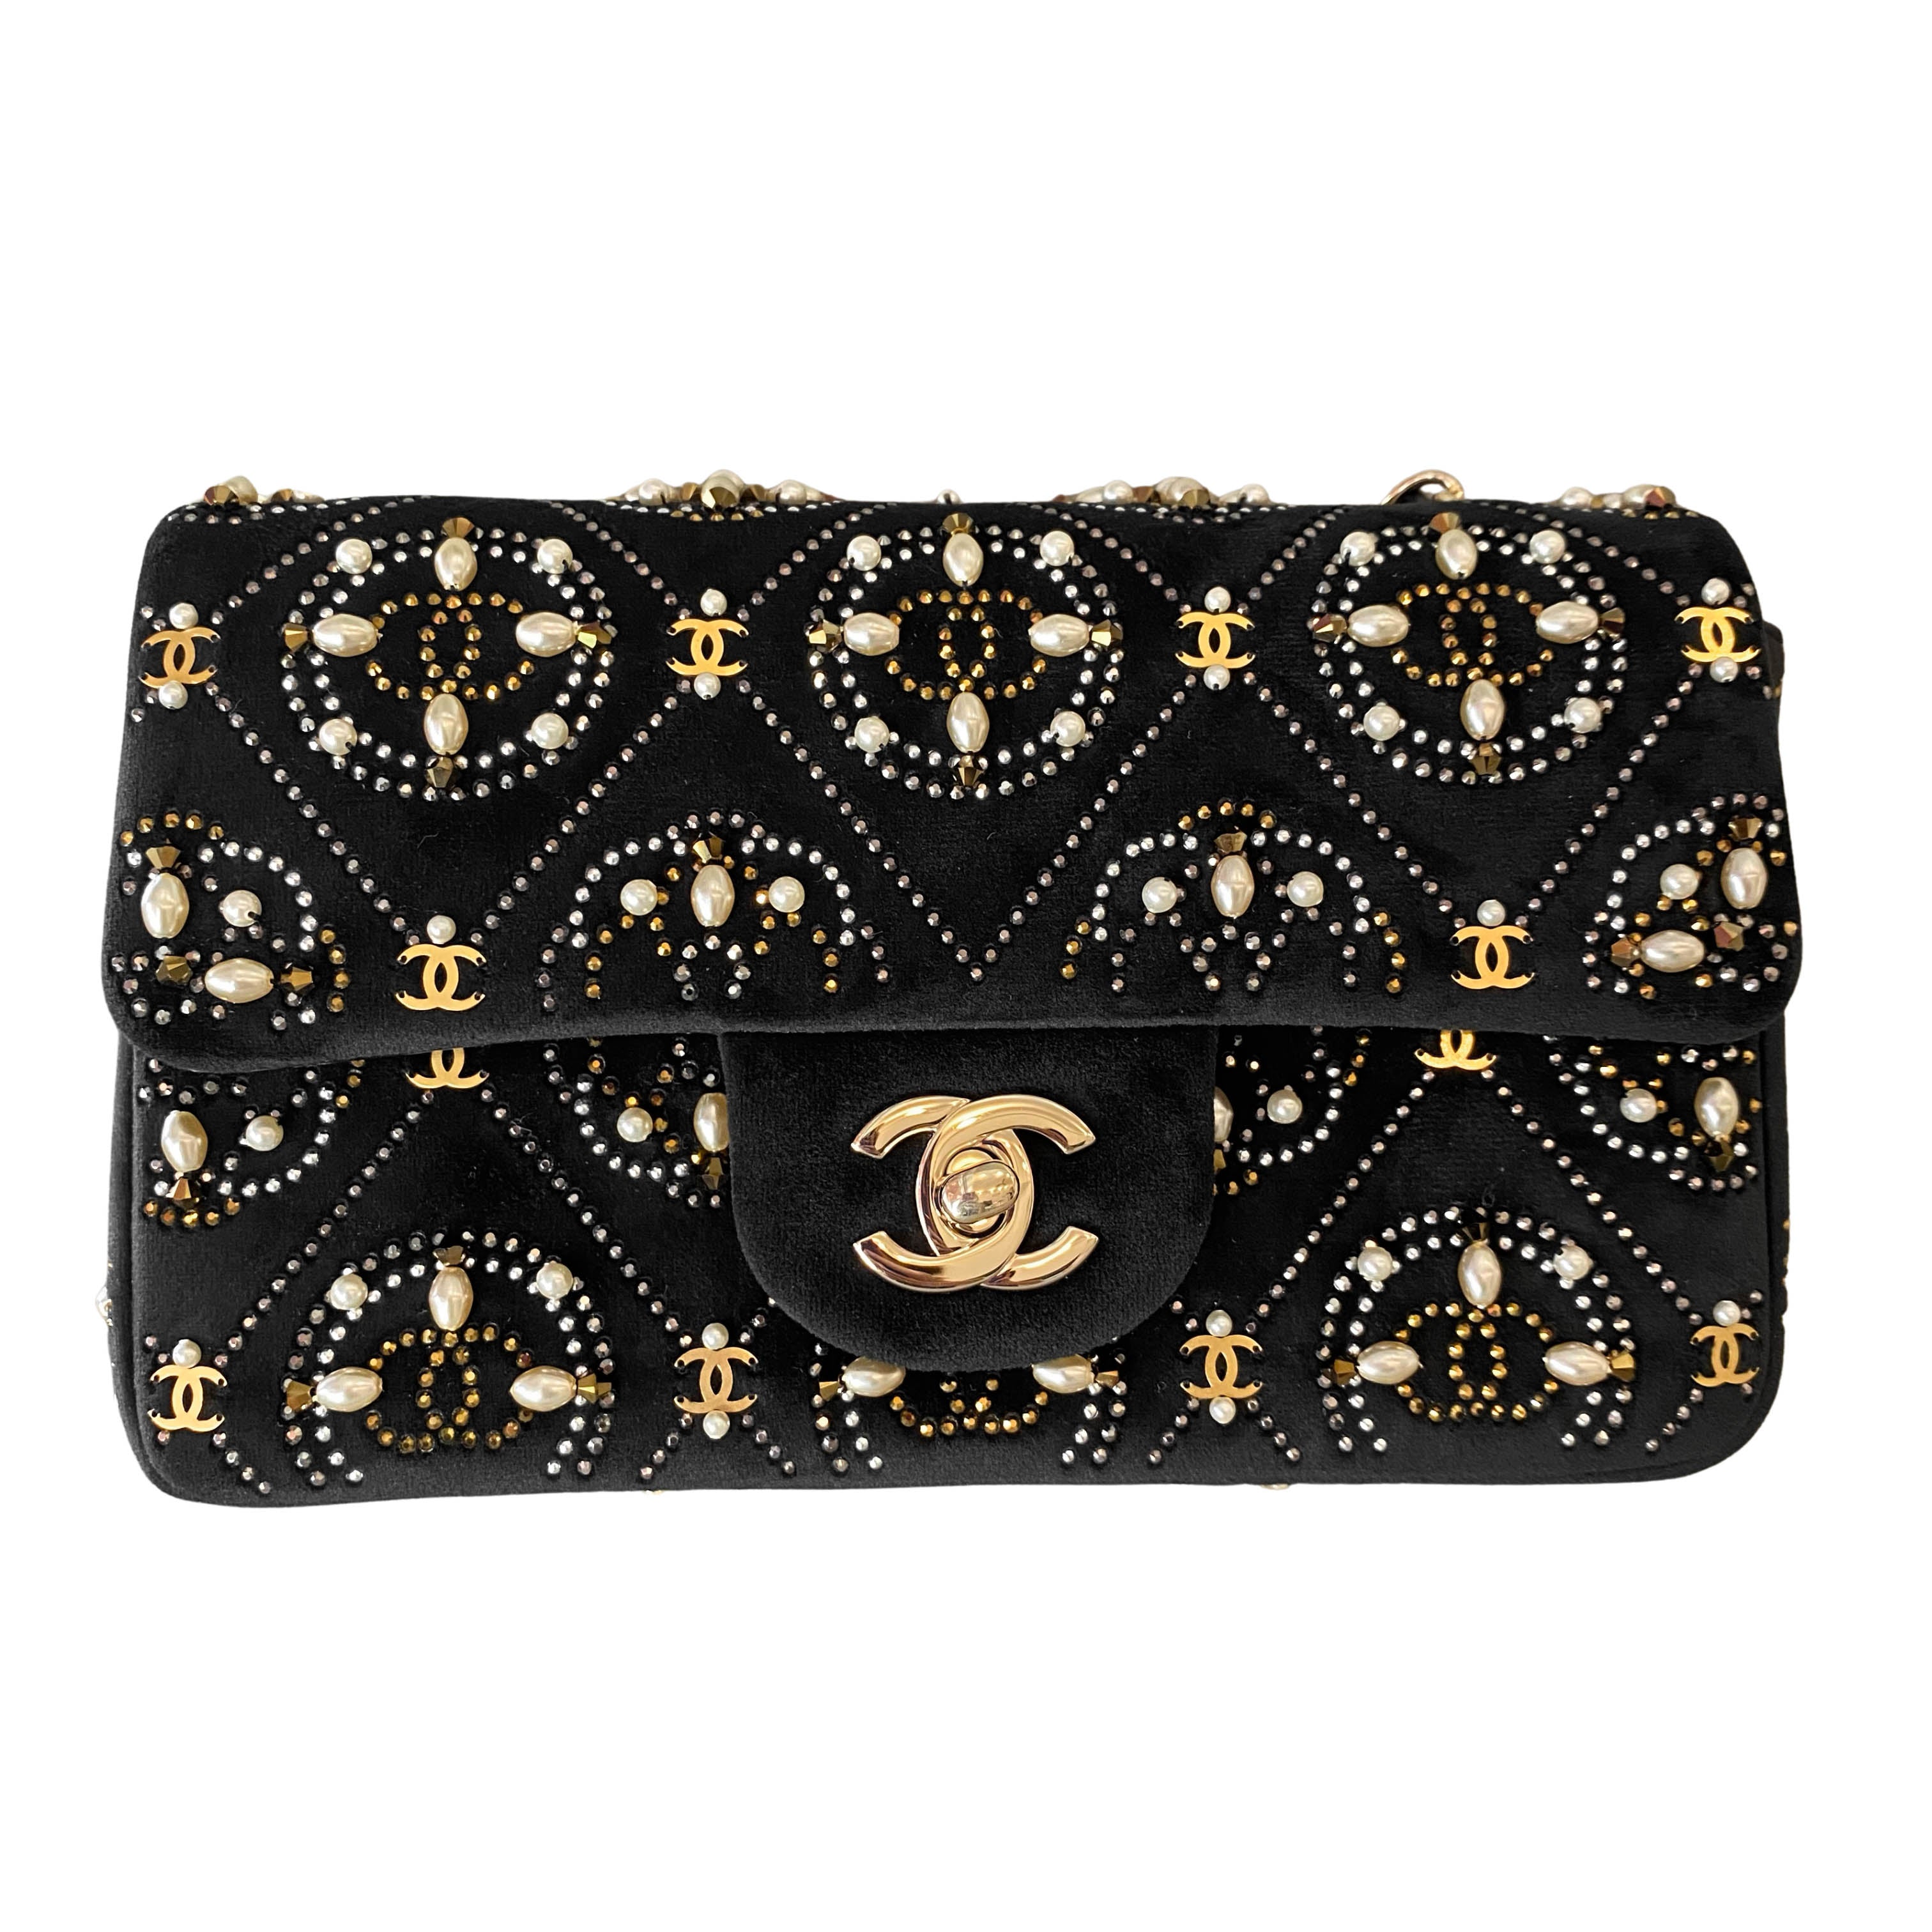 CHANEL Fashion - flap bag  Chanel handbags, Chanel bag, Bags